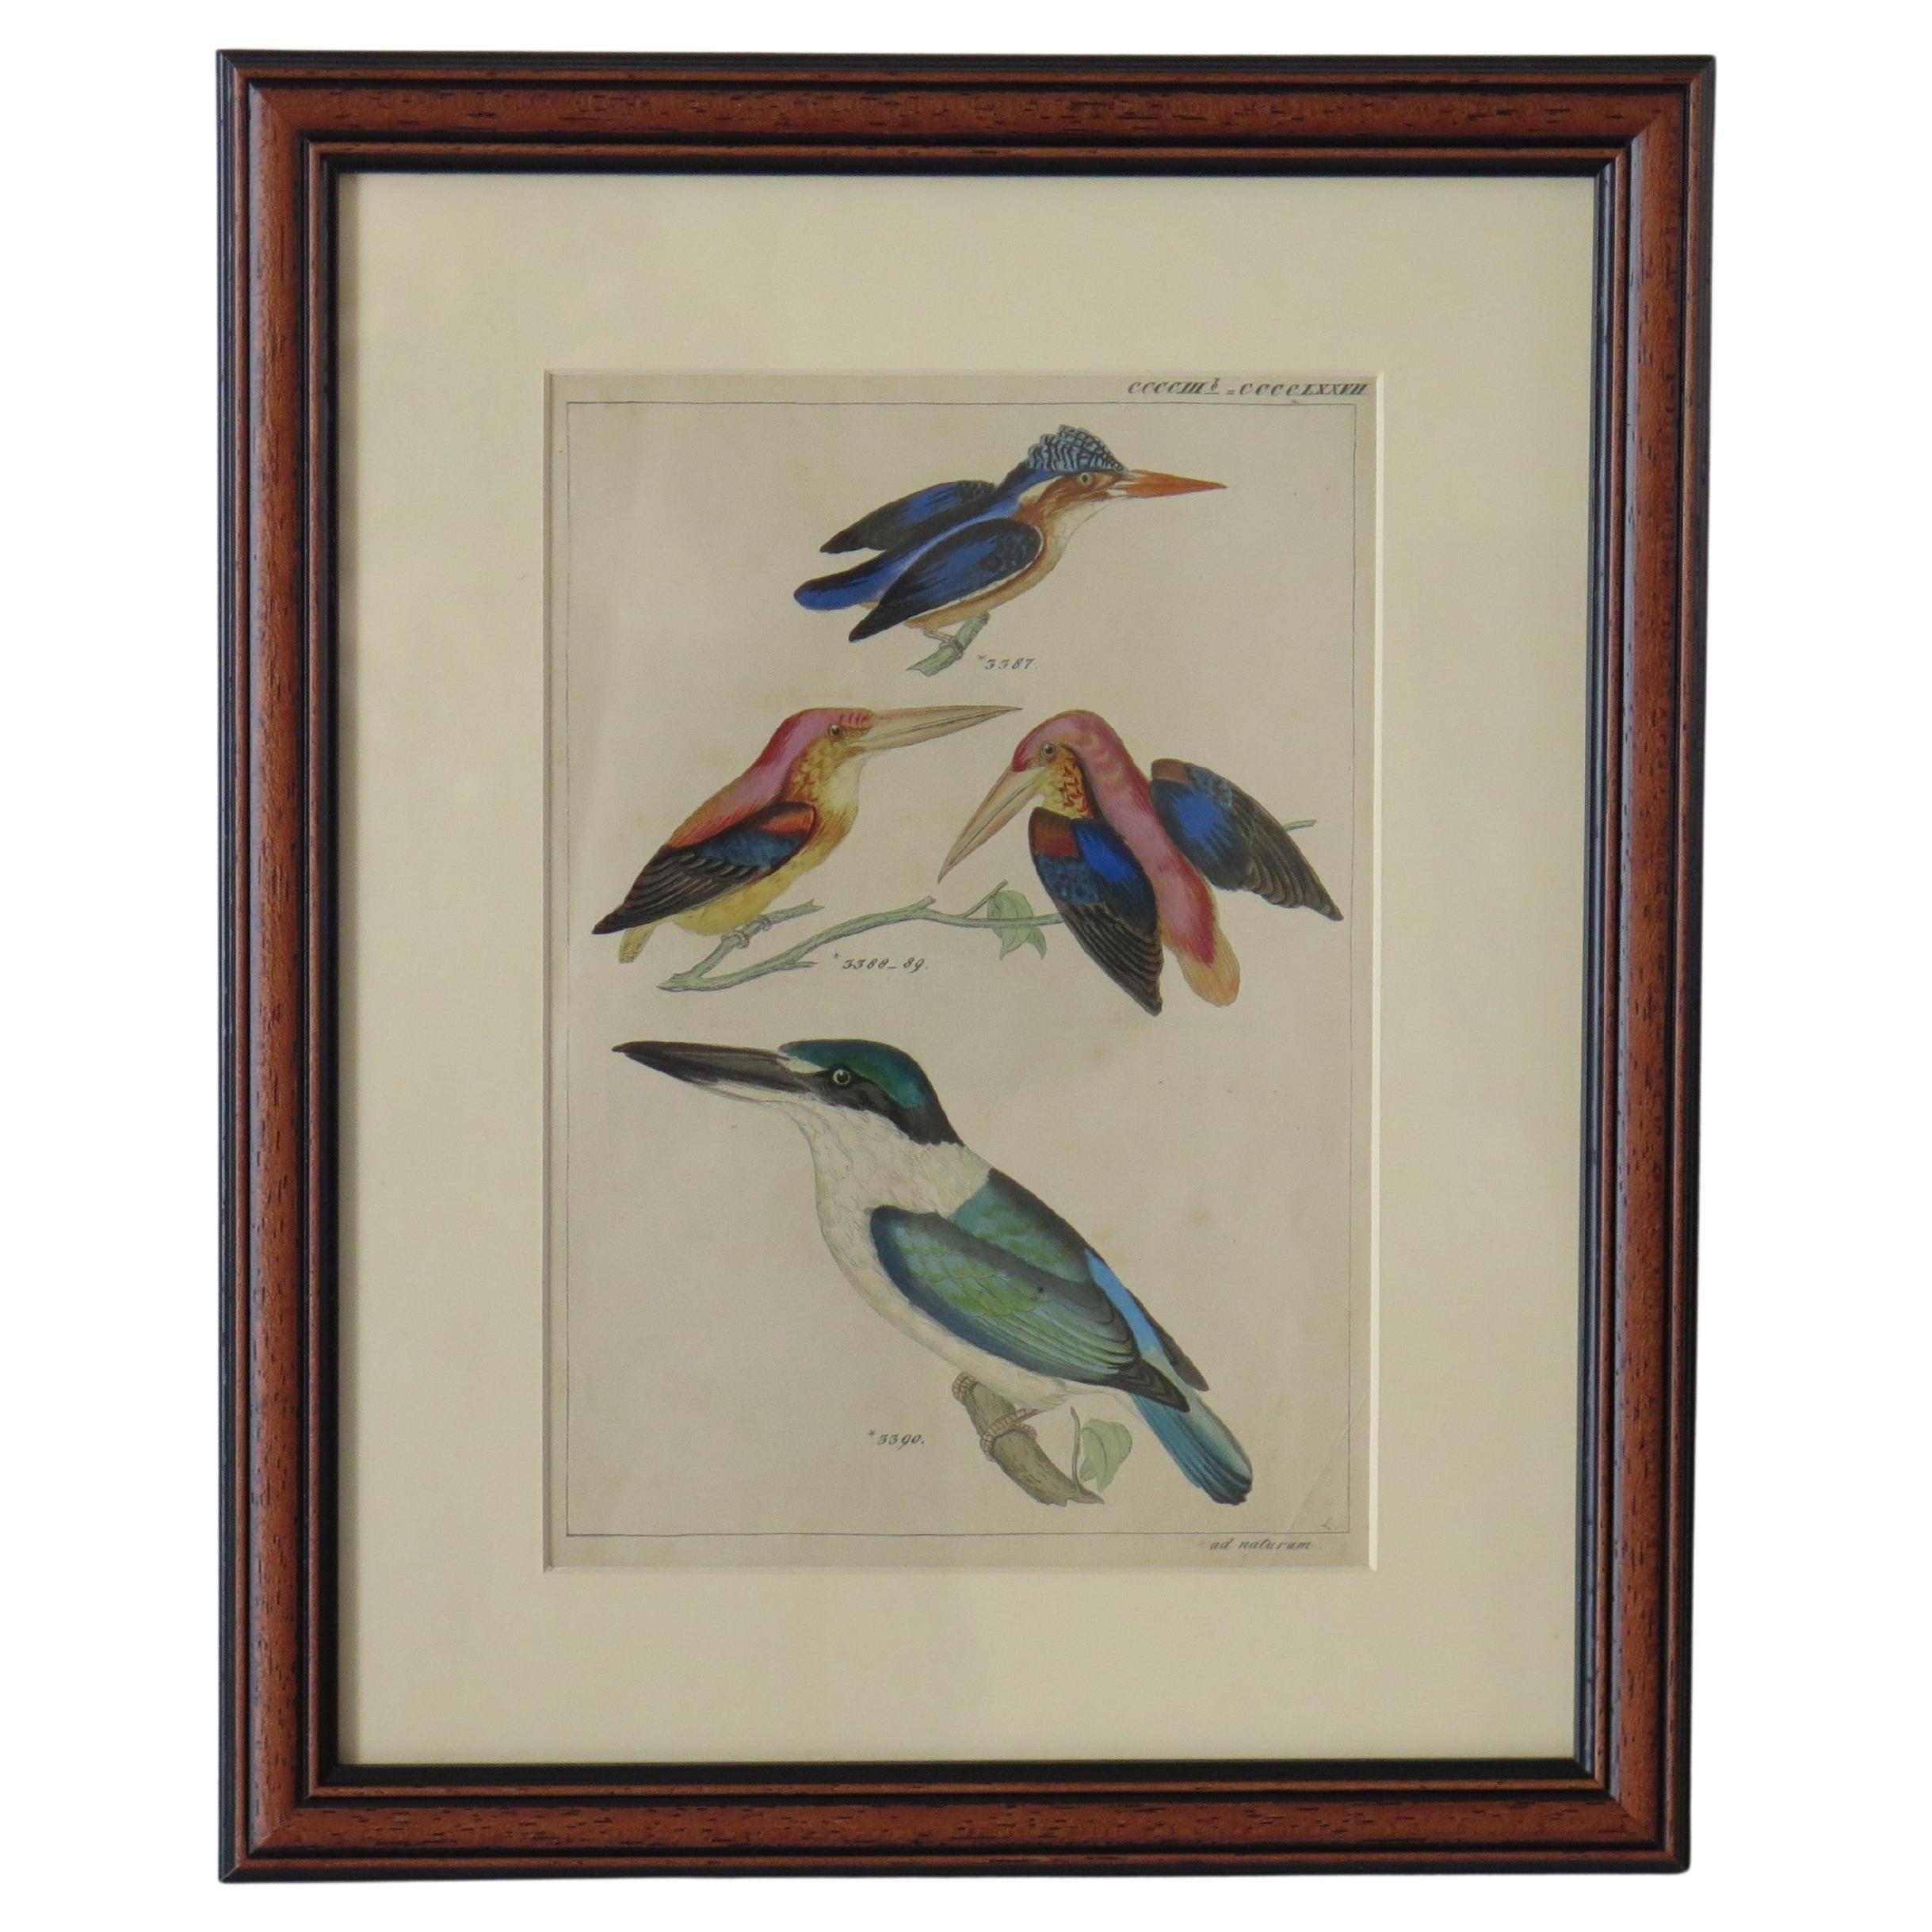 Gravure encadrée à la main représentant des rois-pêcheurs dans le style Audubon, milieu du 19e siècle